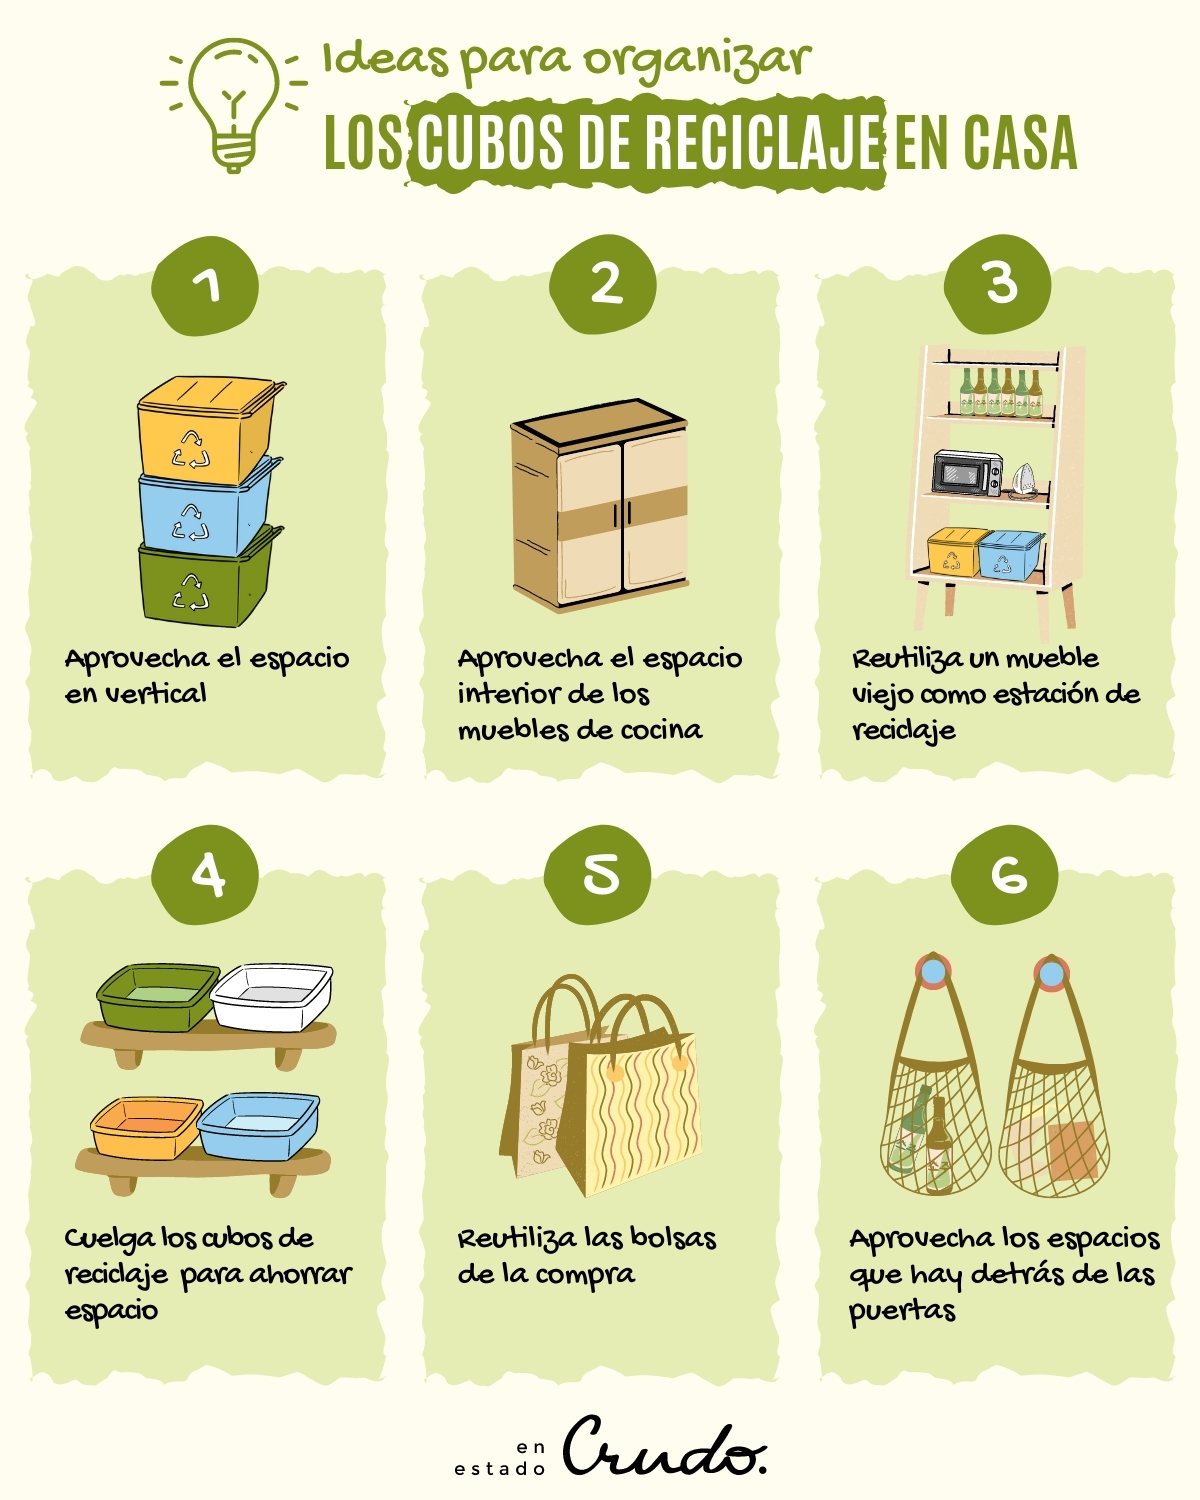 Las mejores ideas para organizar los cubos de reciclaje en casa • En Estado  Crudo